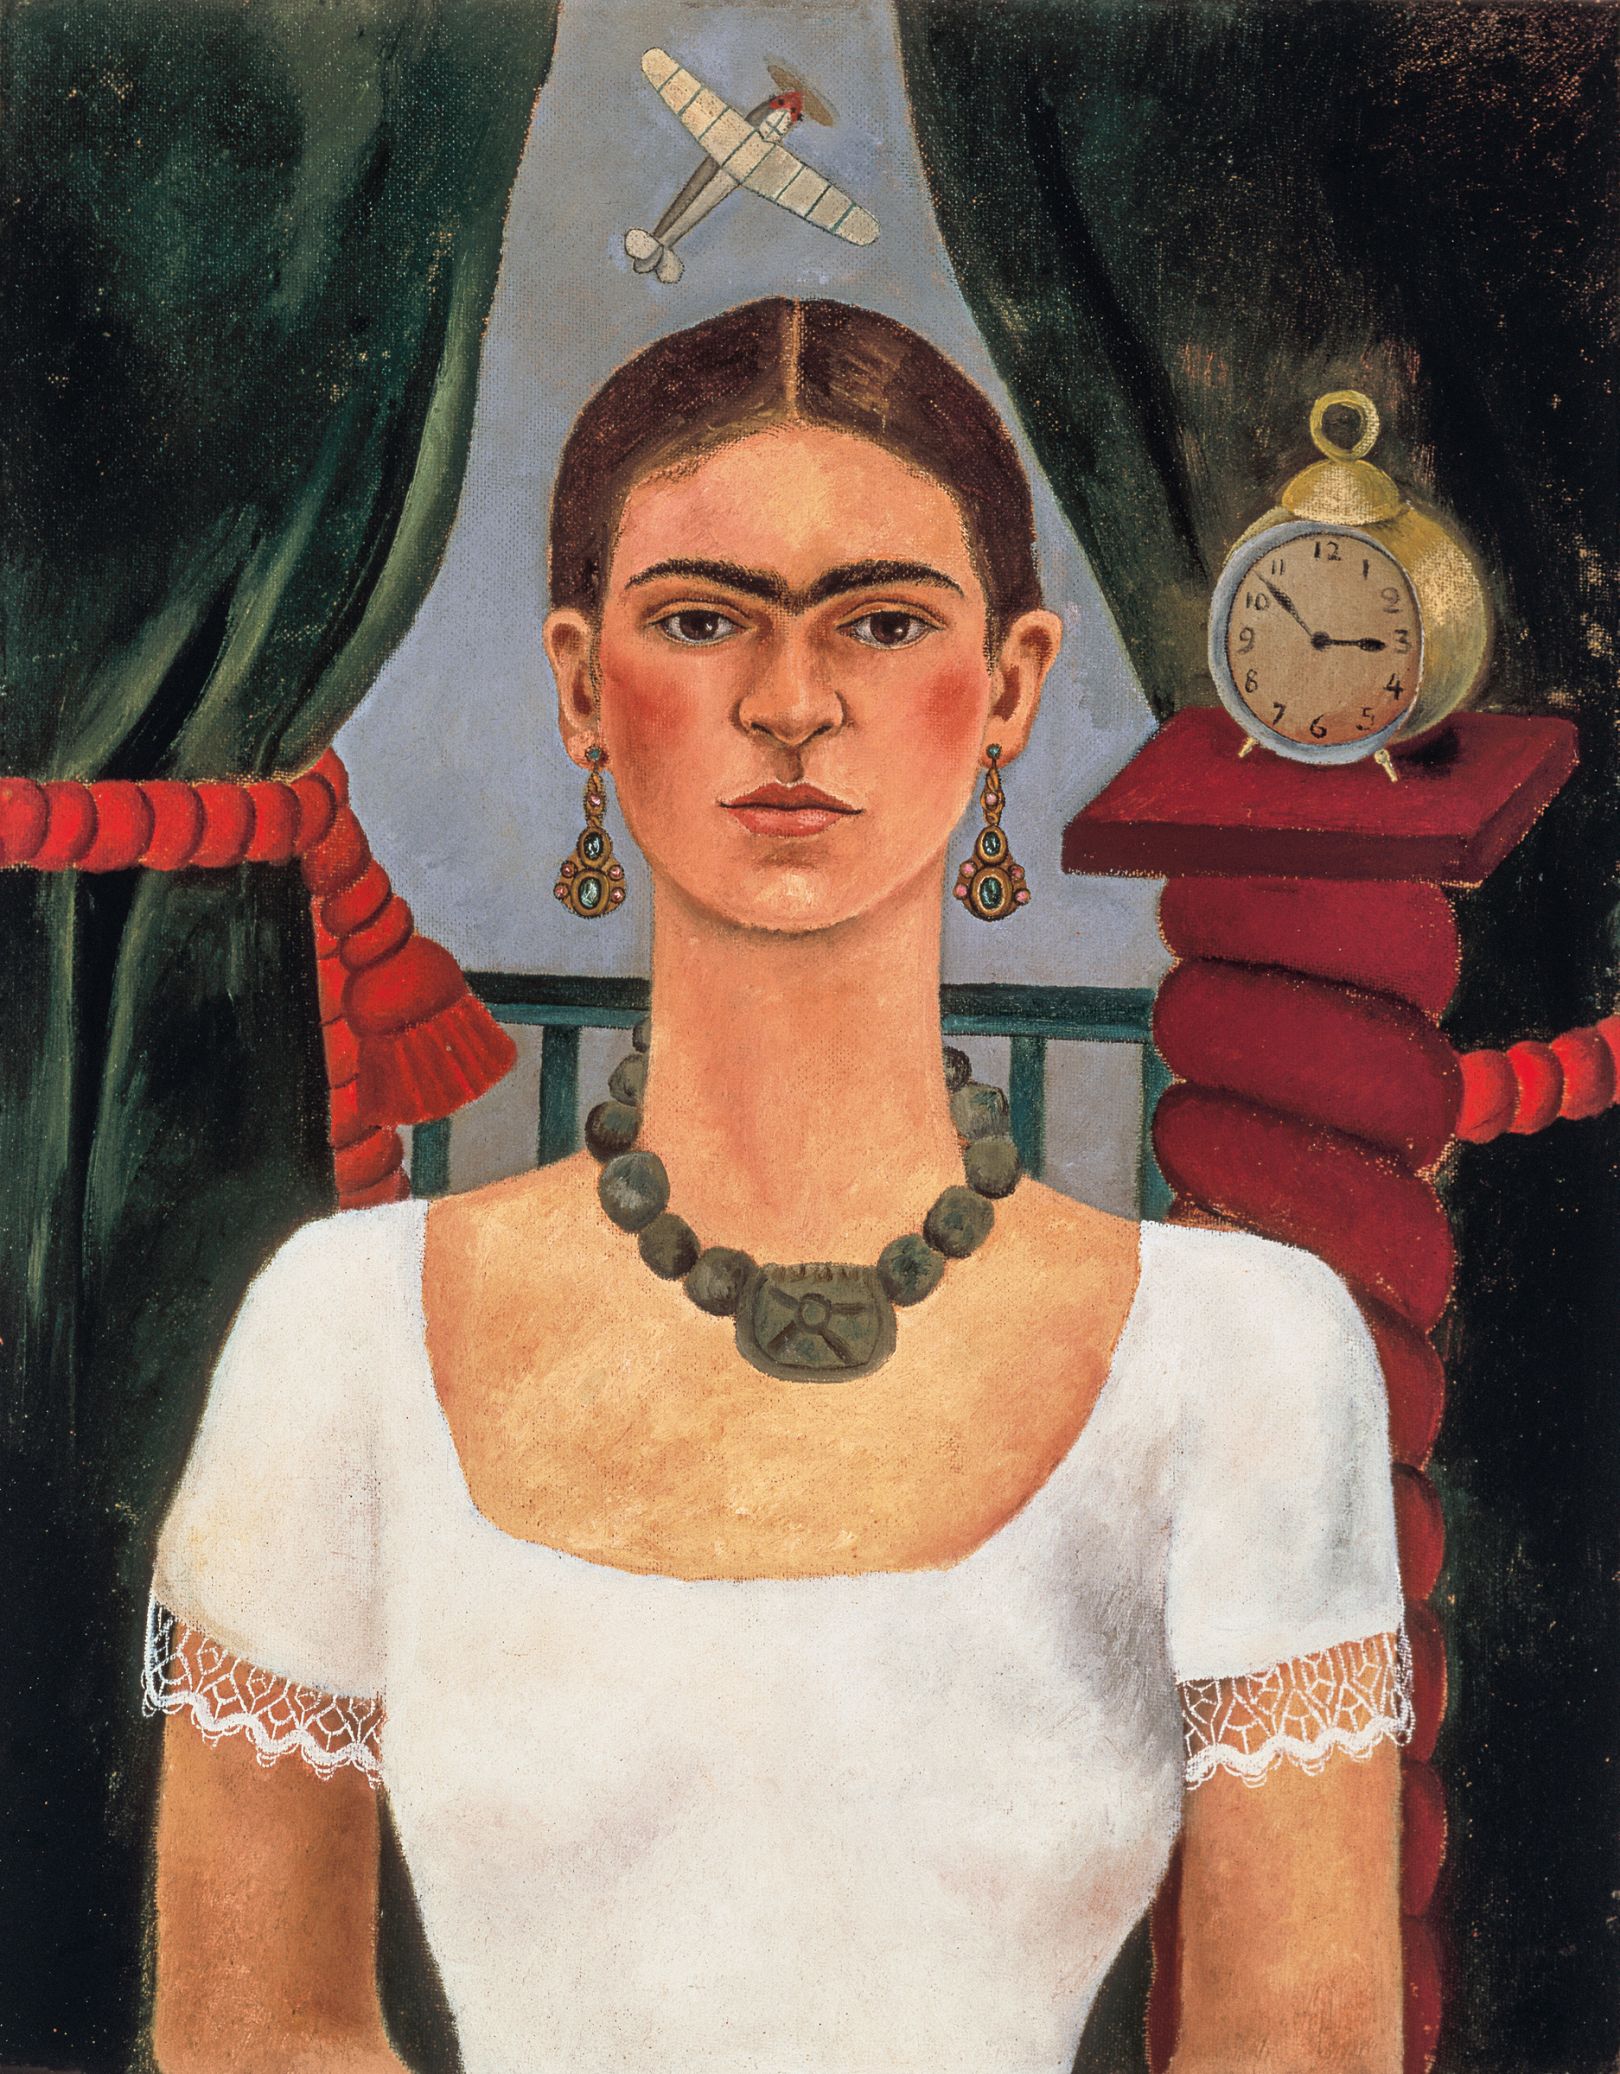 frida kahlo biography in details